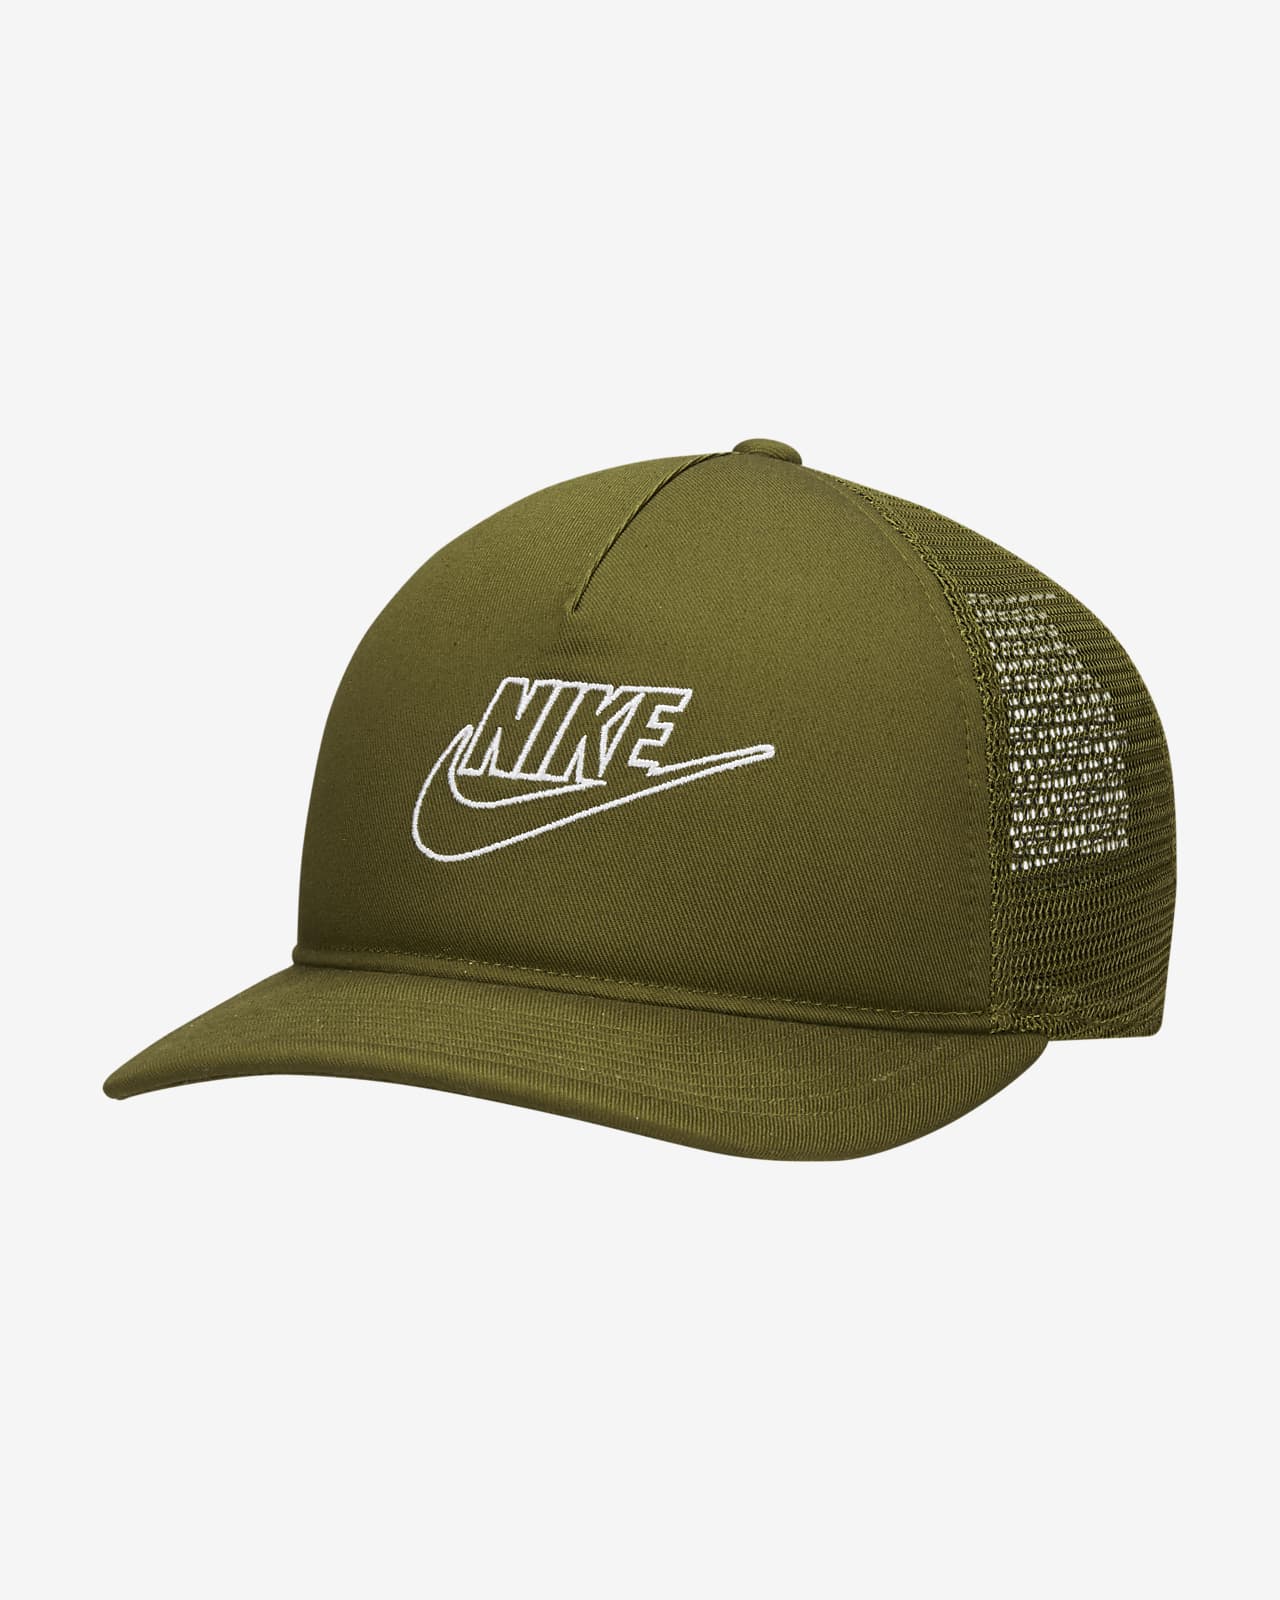 Nike Sportswear Classic 99 Trucker Cap